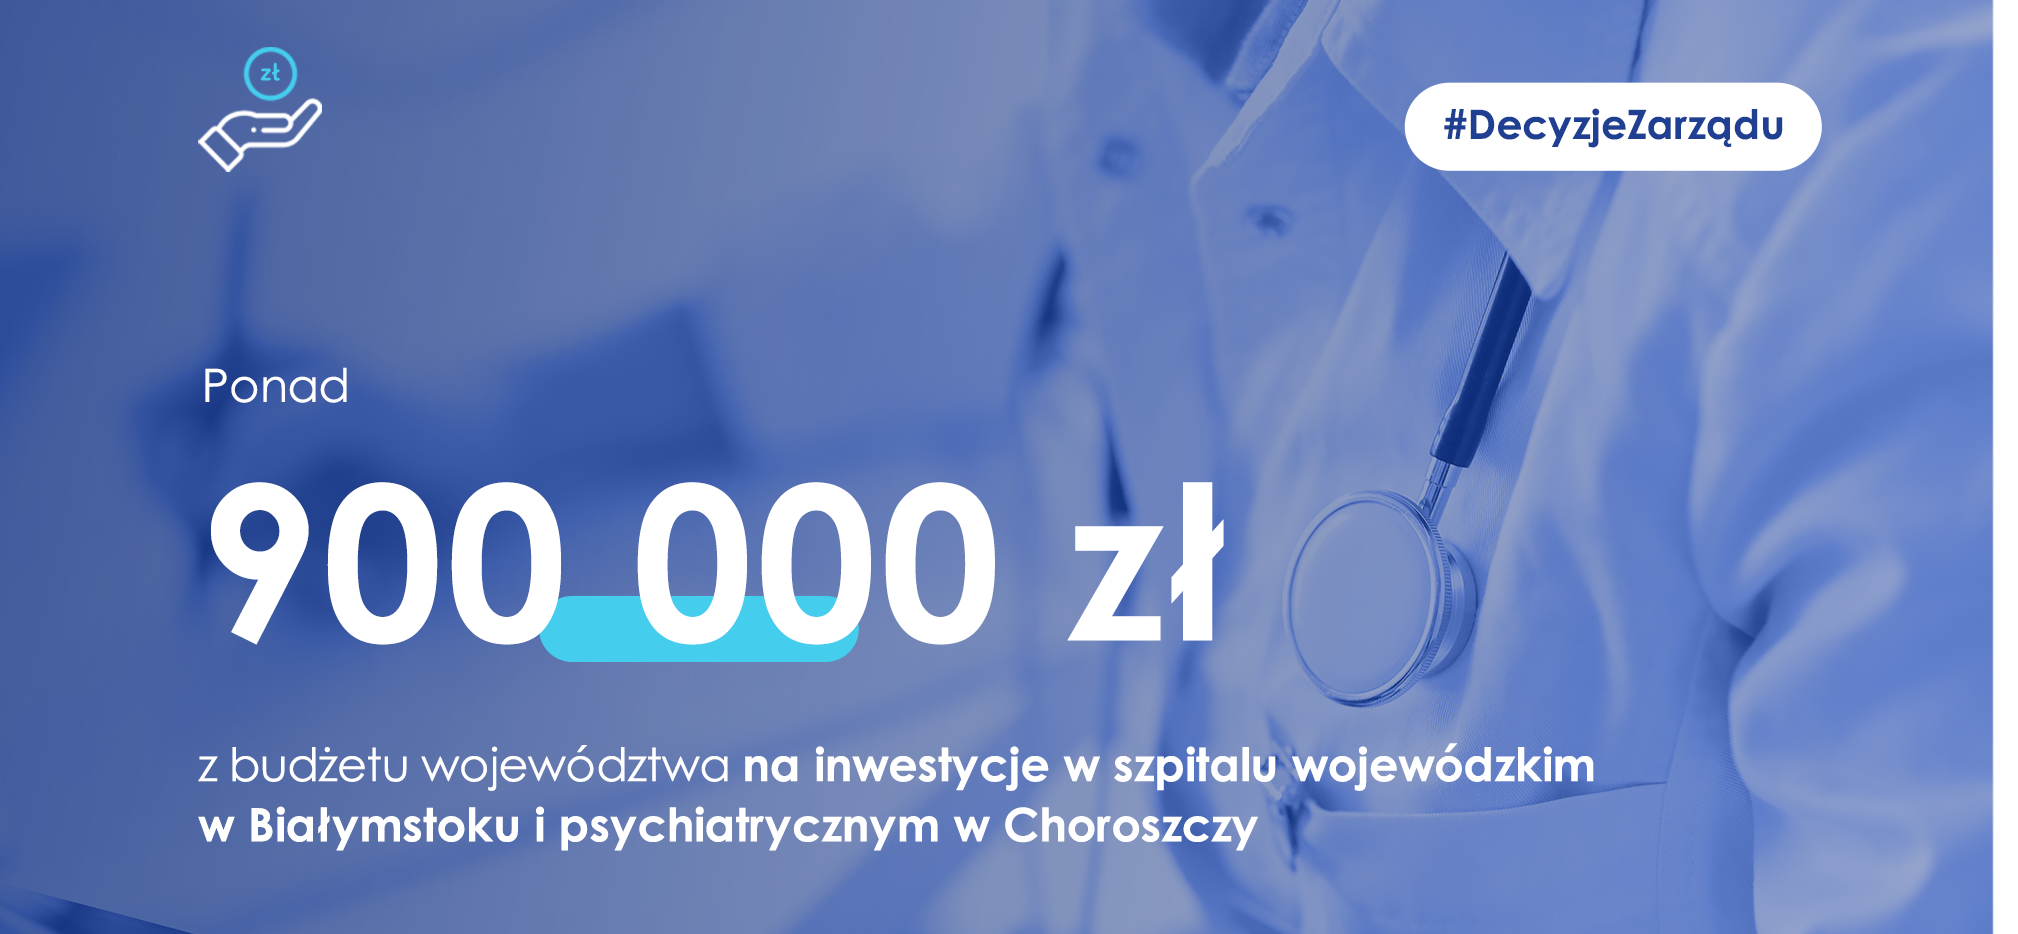 Ponad 900 tys. zł na inwestycje w placówkach medycznych w Białymstoku i Choroszczy